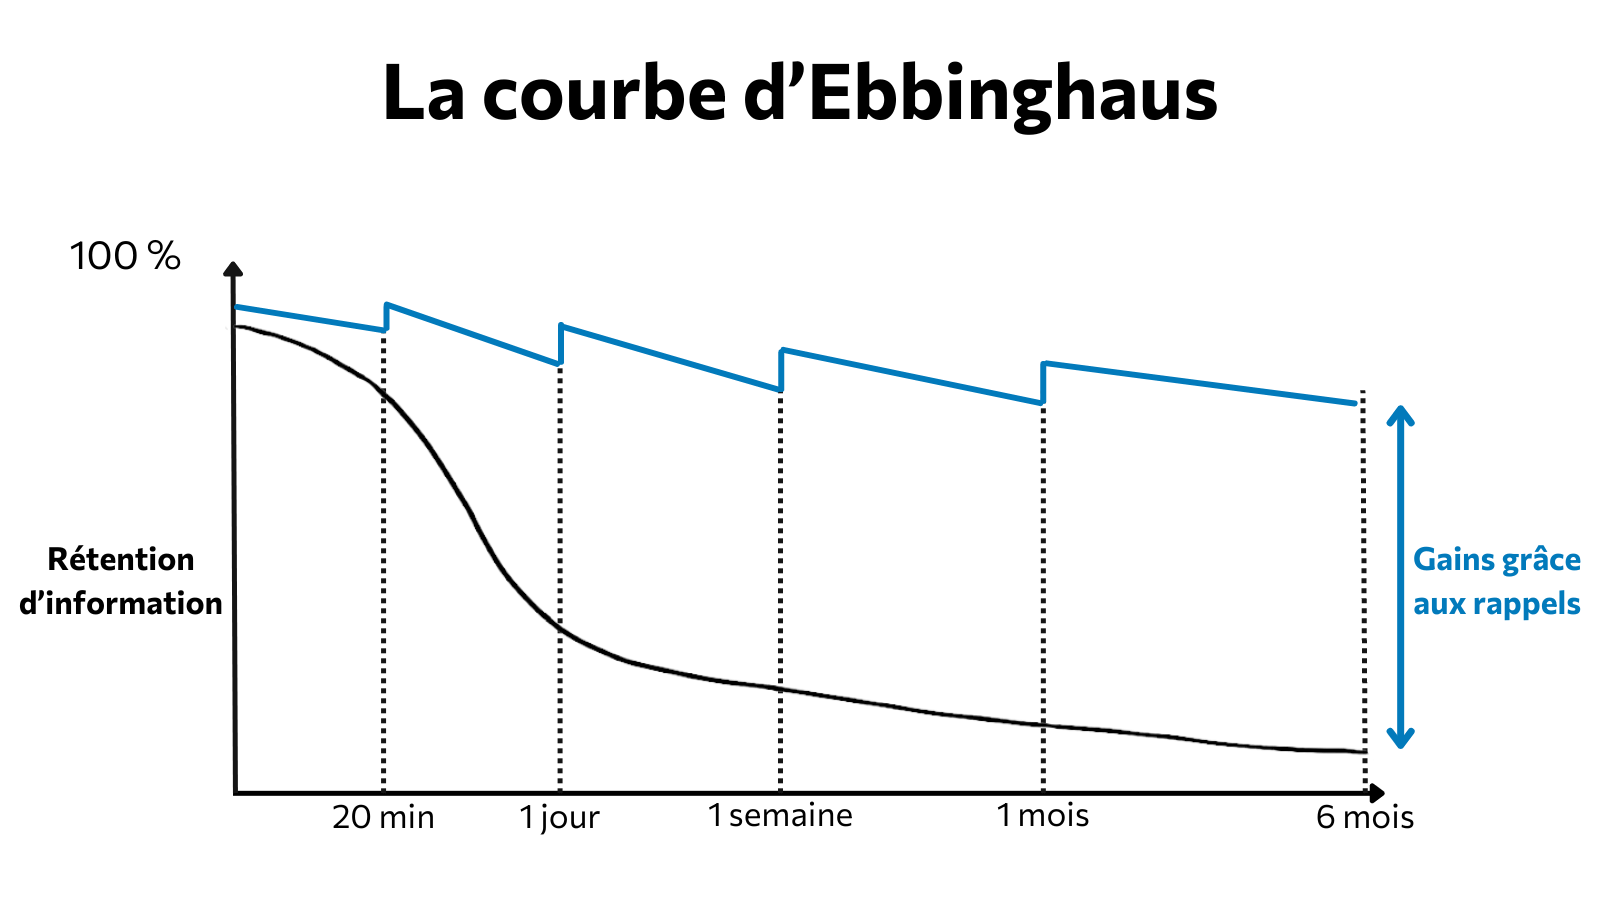 La courbe d’Ebbinghaus au secours de l’amélioration continue